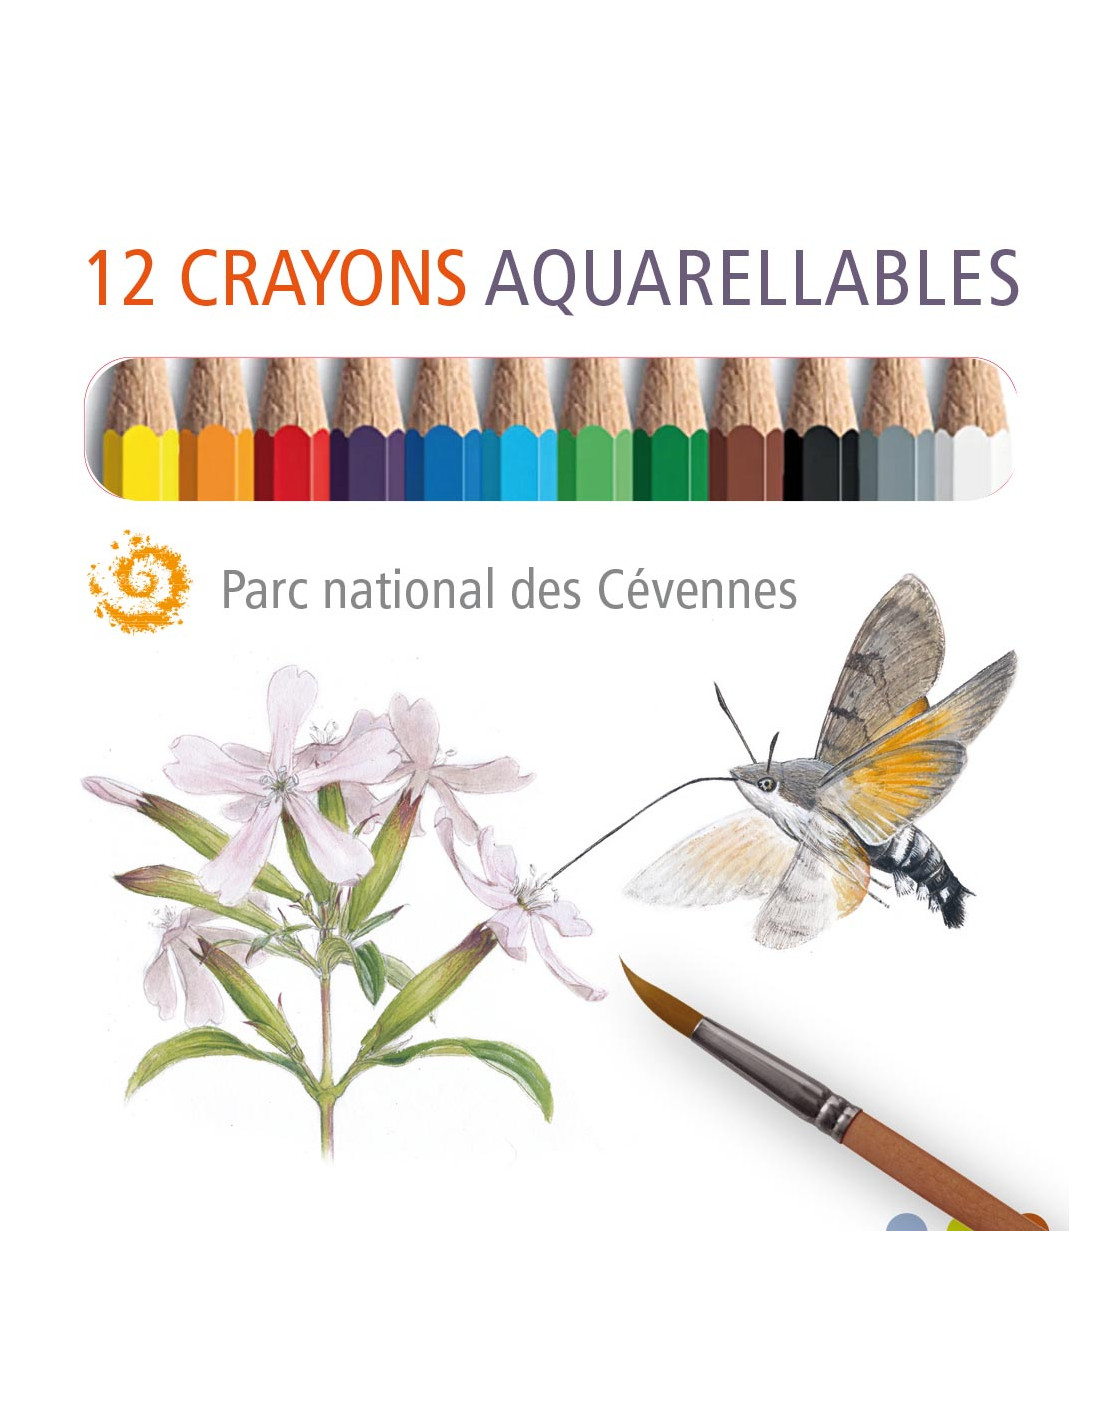 Mini crayons aquarellables du Parc national des Cévennes